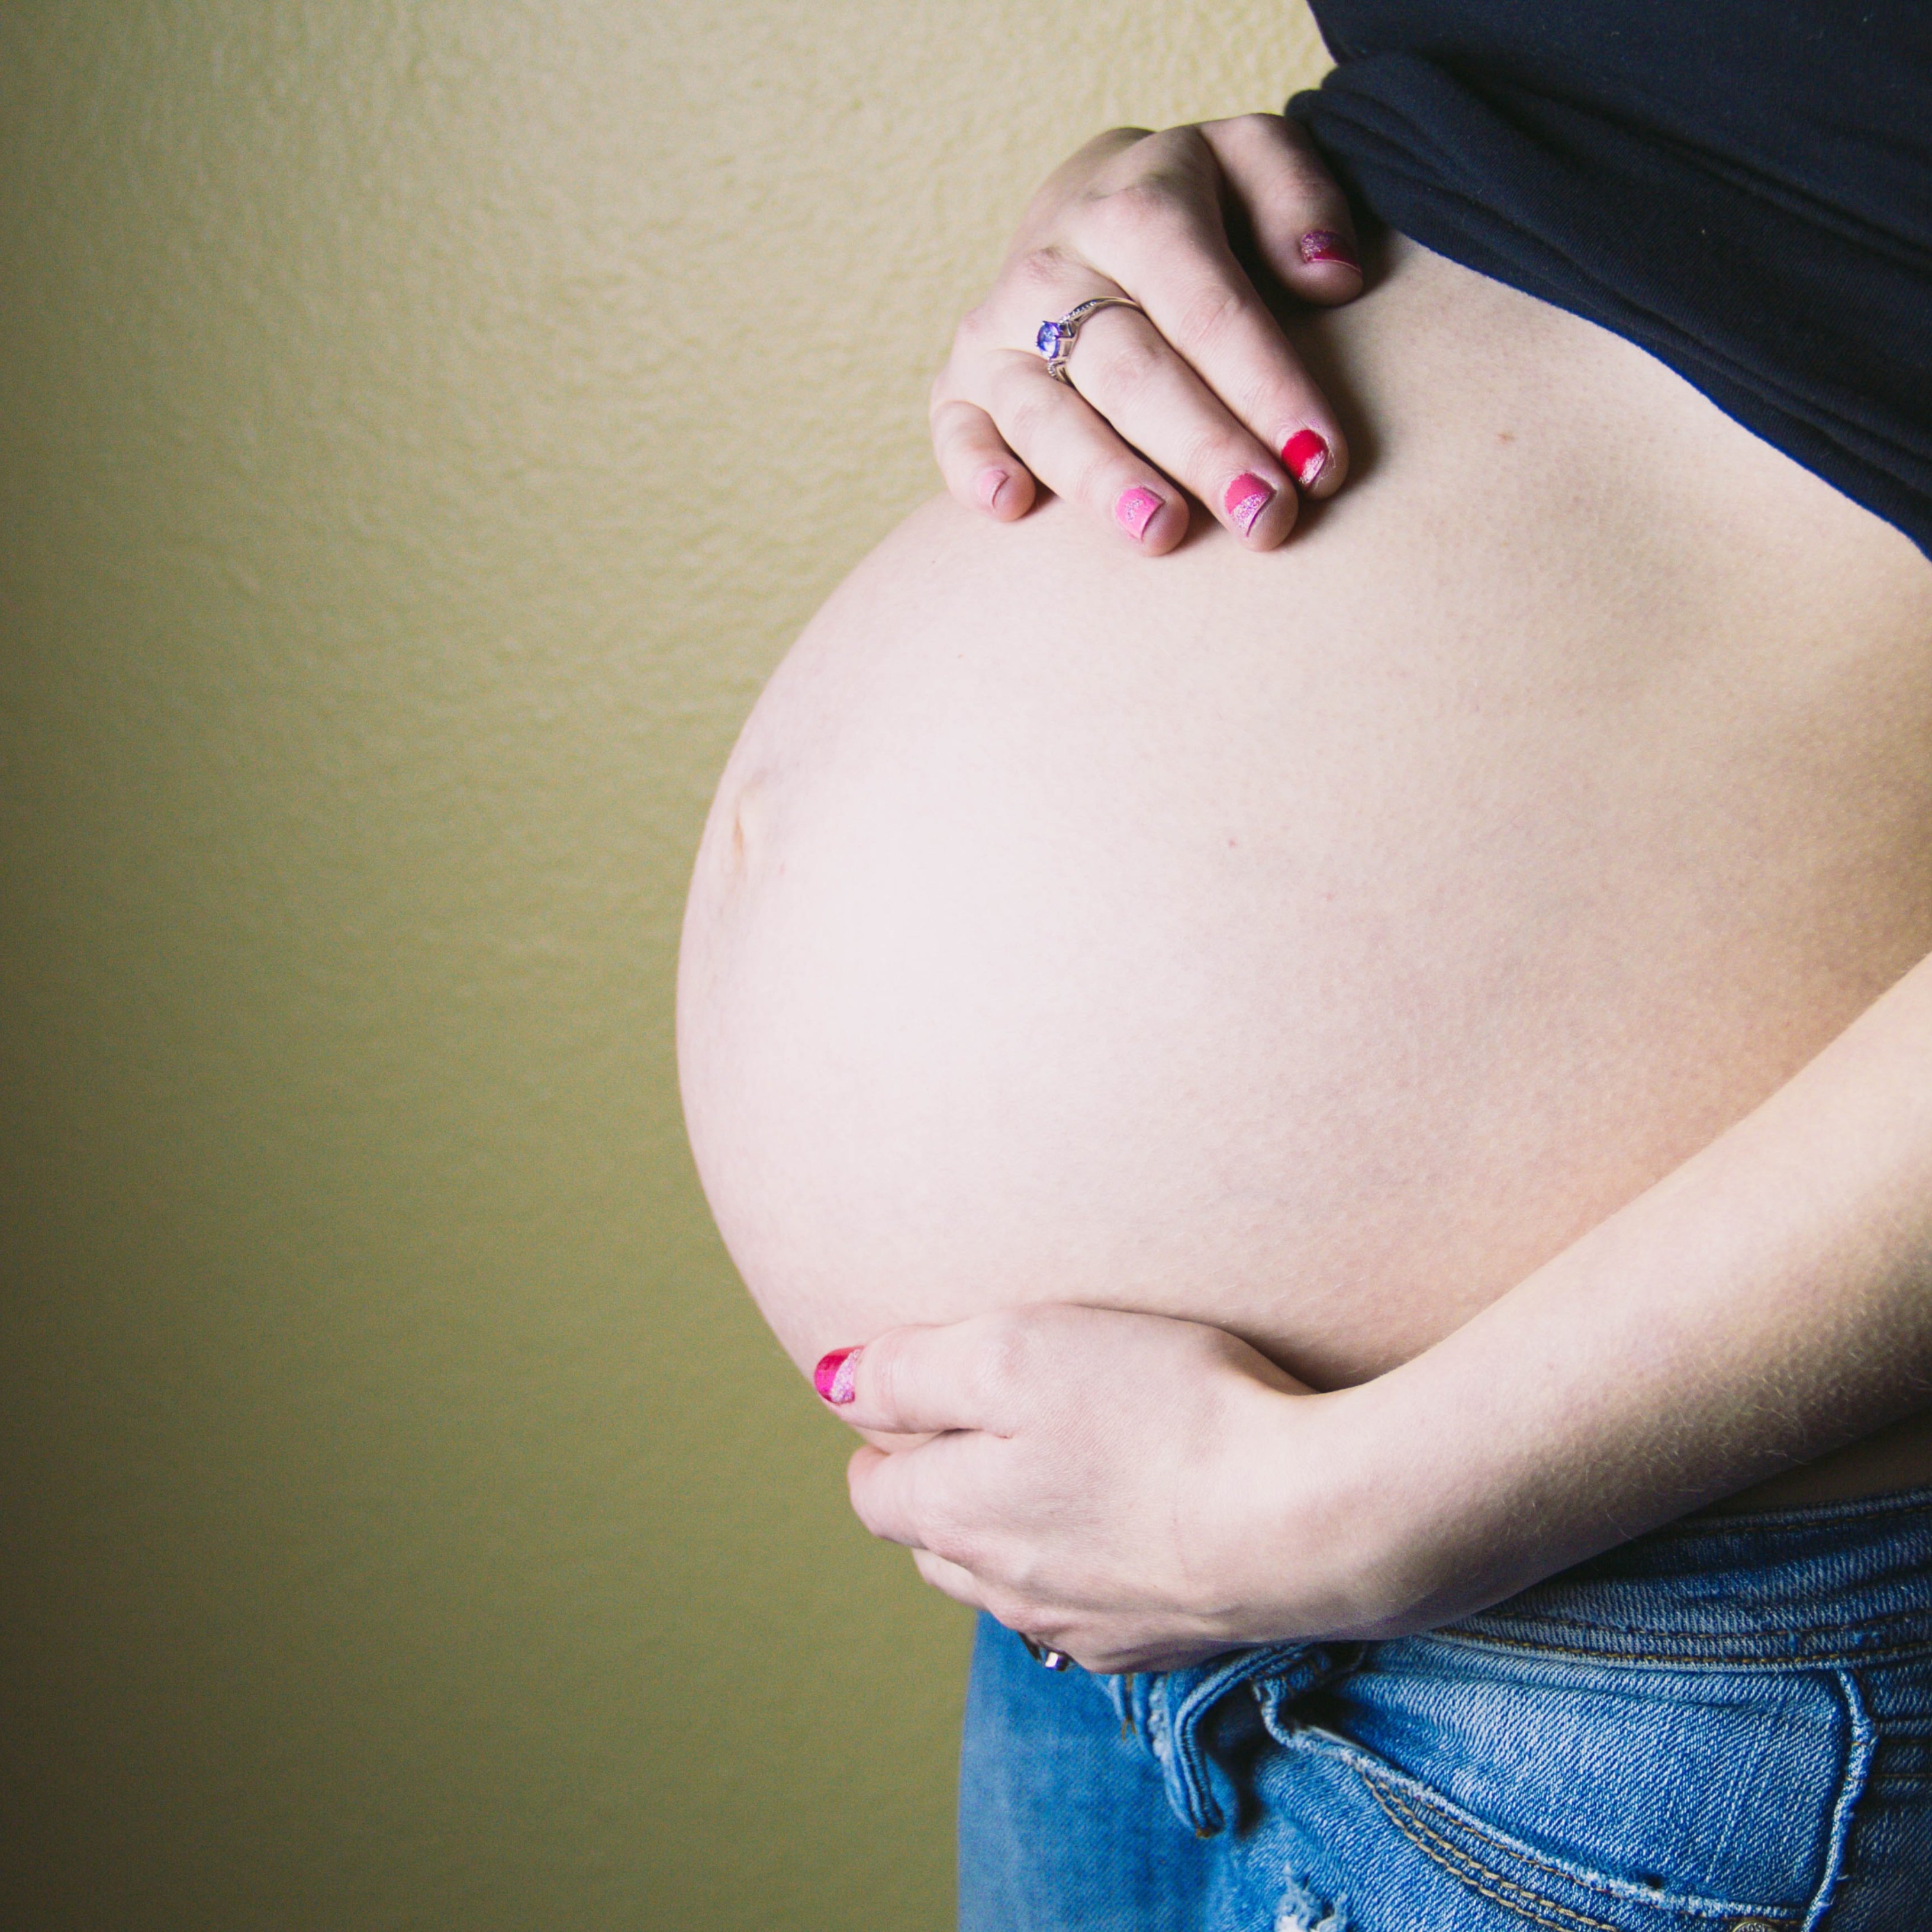 Així pot afectar les hormones l'ús de cosmètics durant l'embaràs